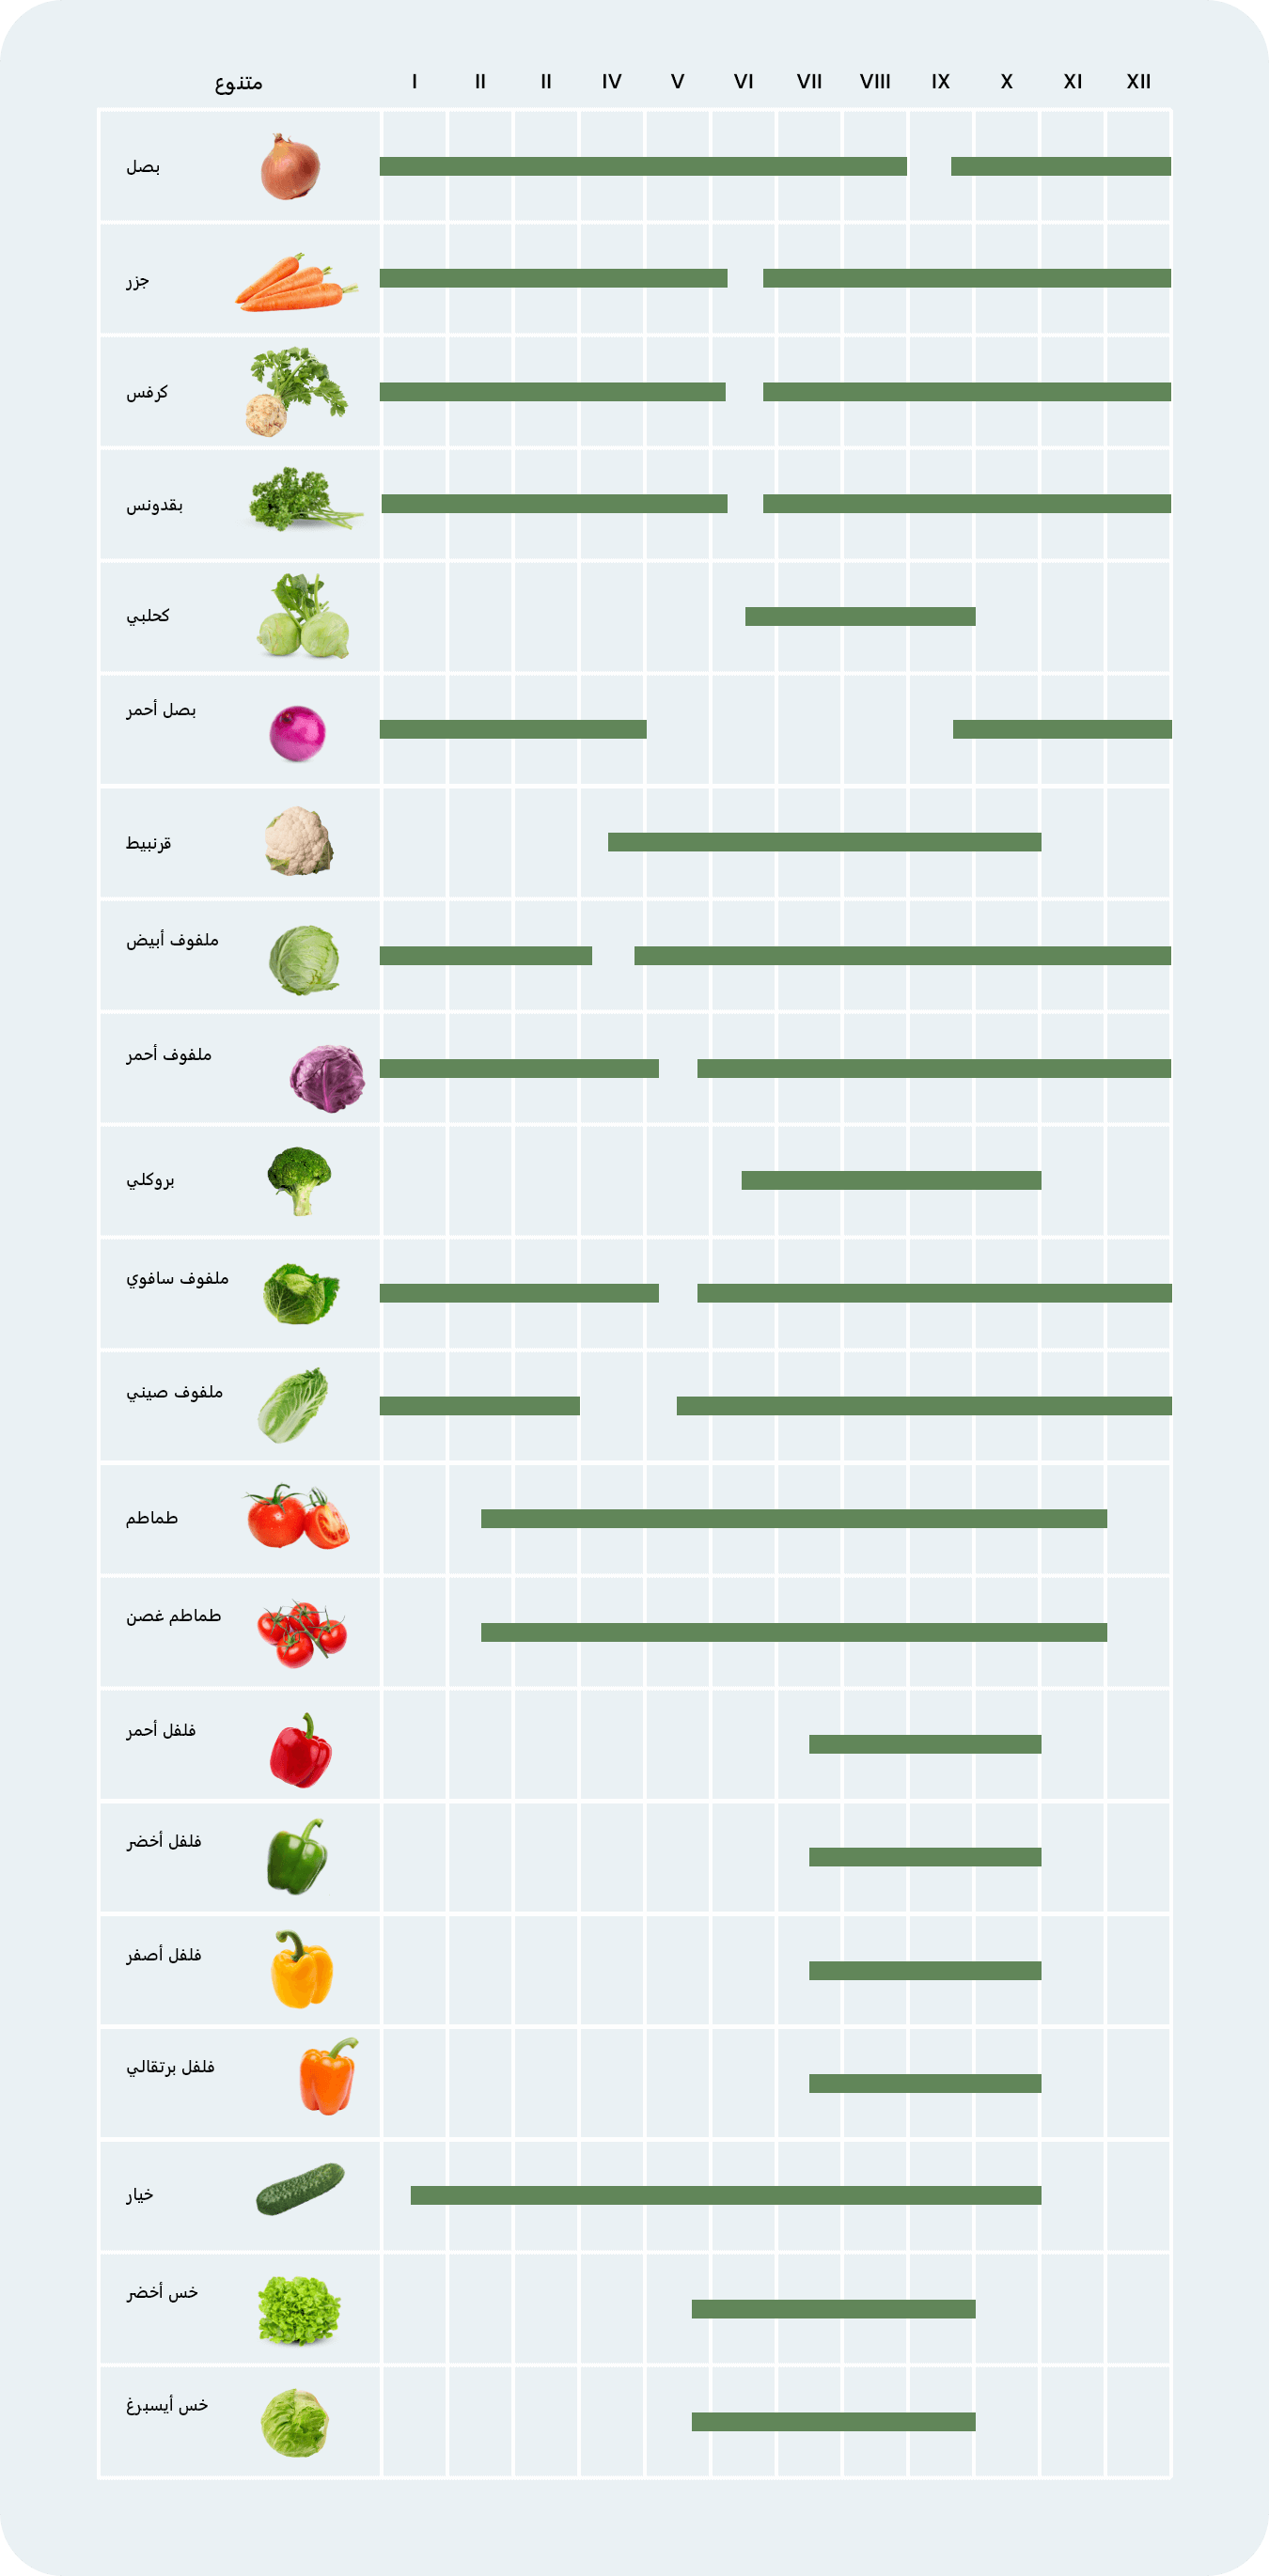 warzywa-krajowe-tabela-sezonowosci-AR